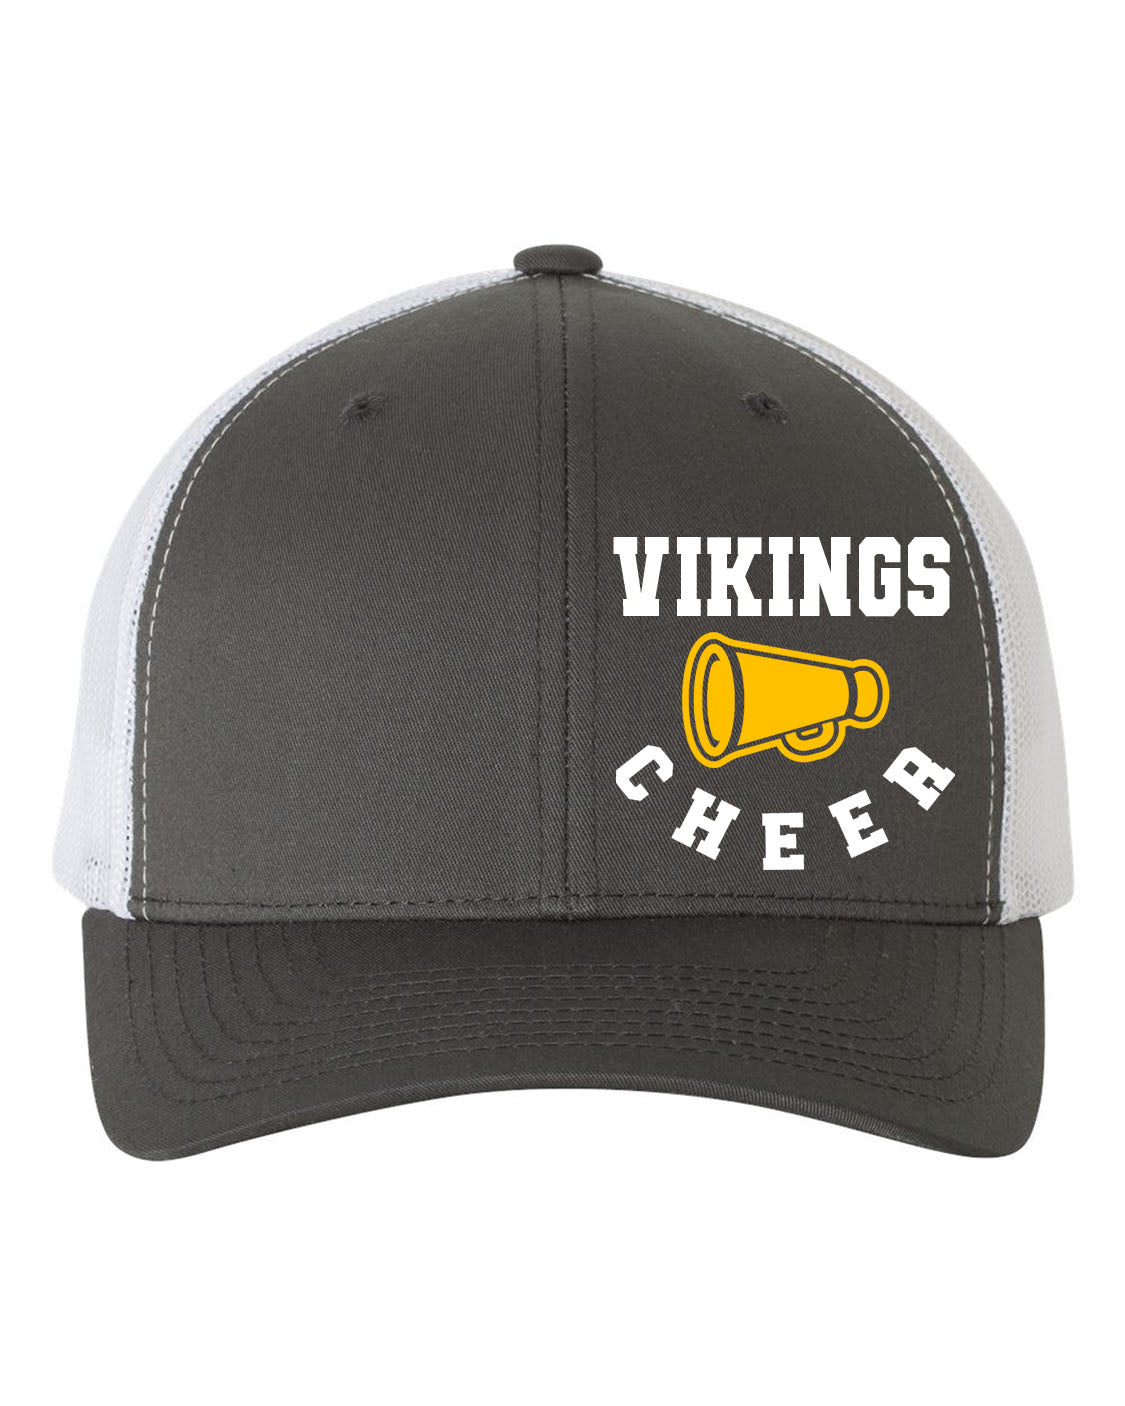 Vernon Vikings Cheer Design 13 Trucker Hat